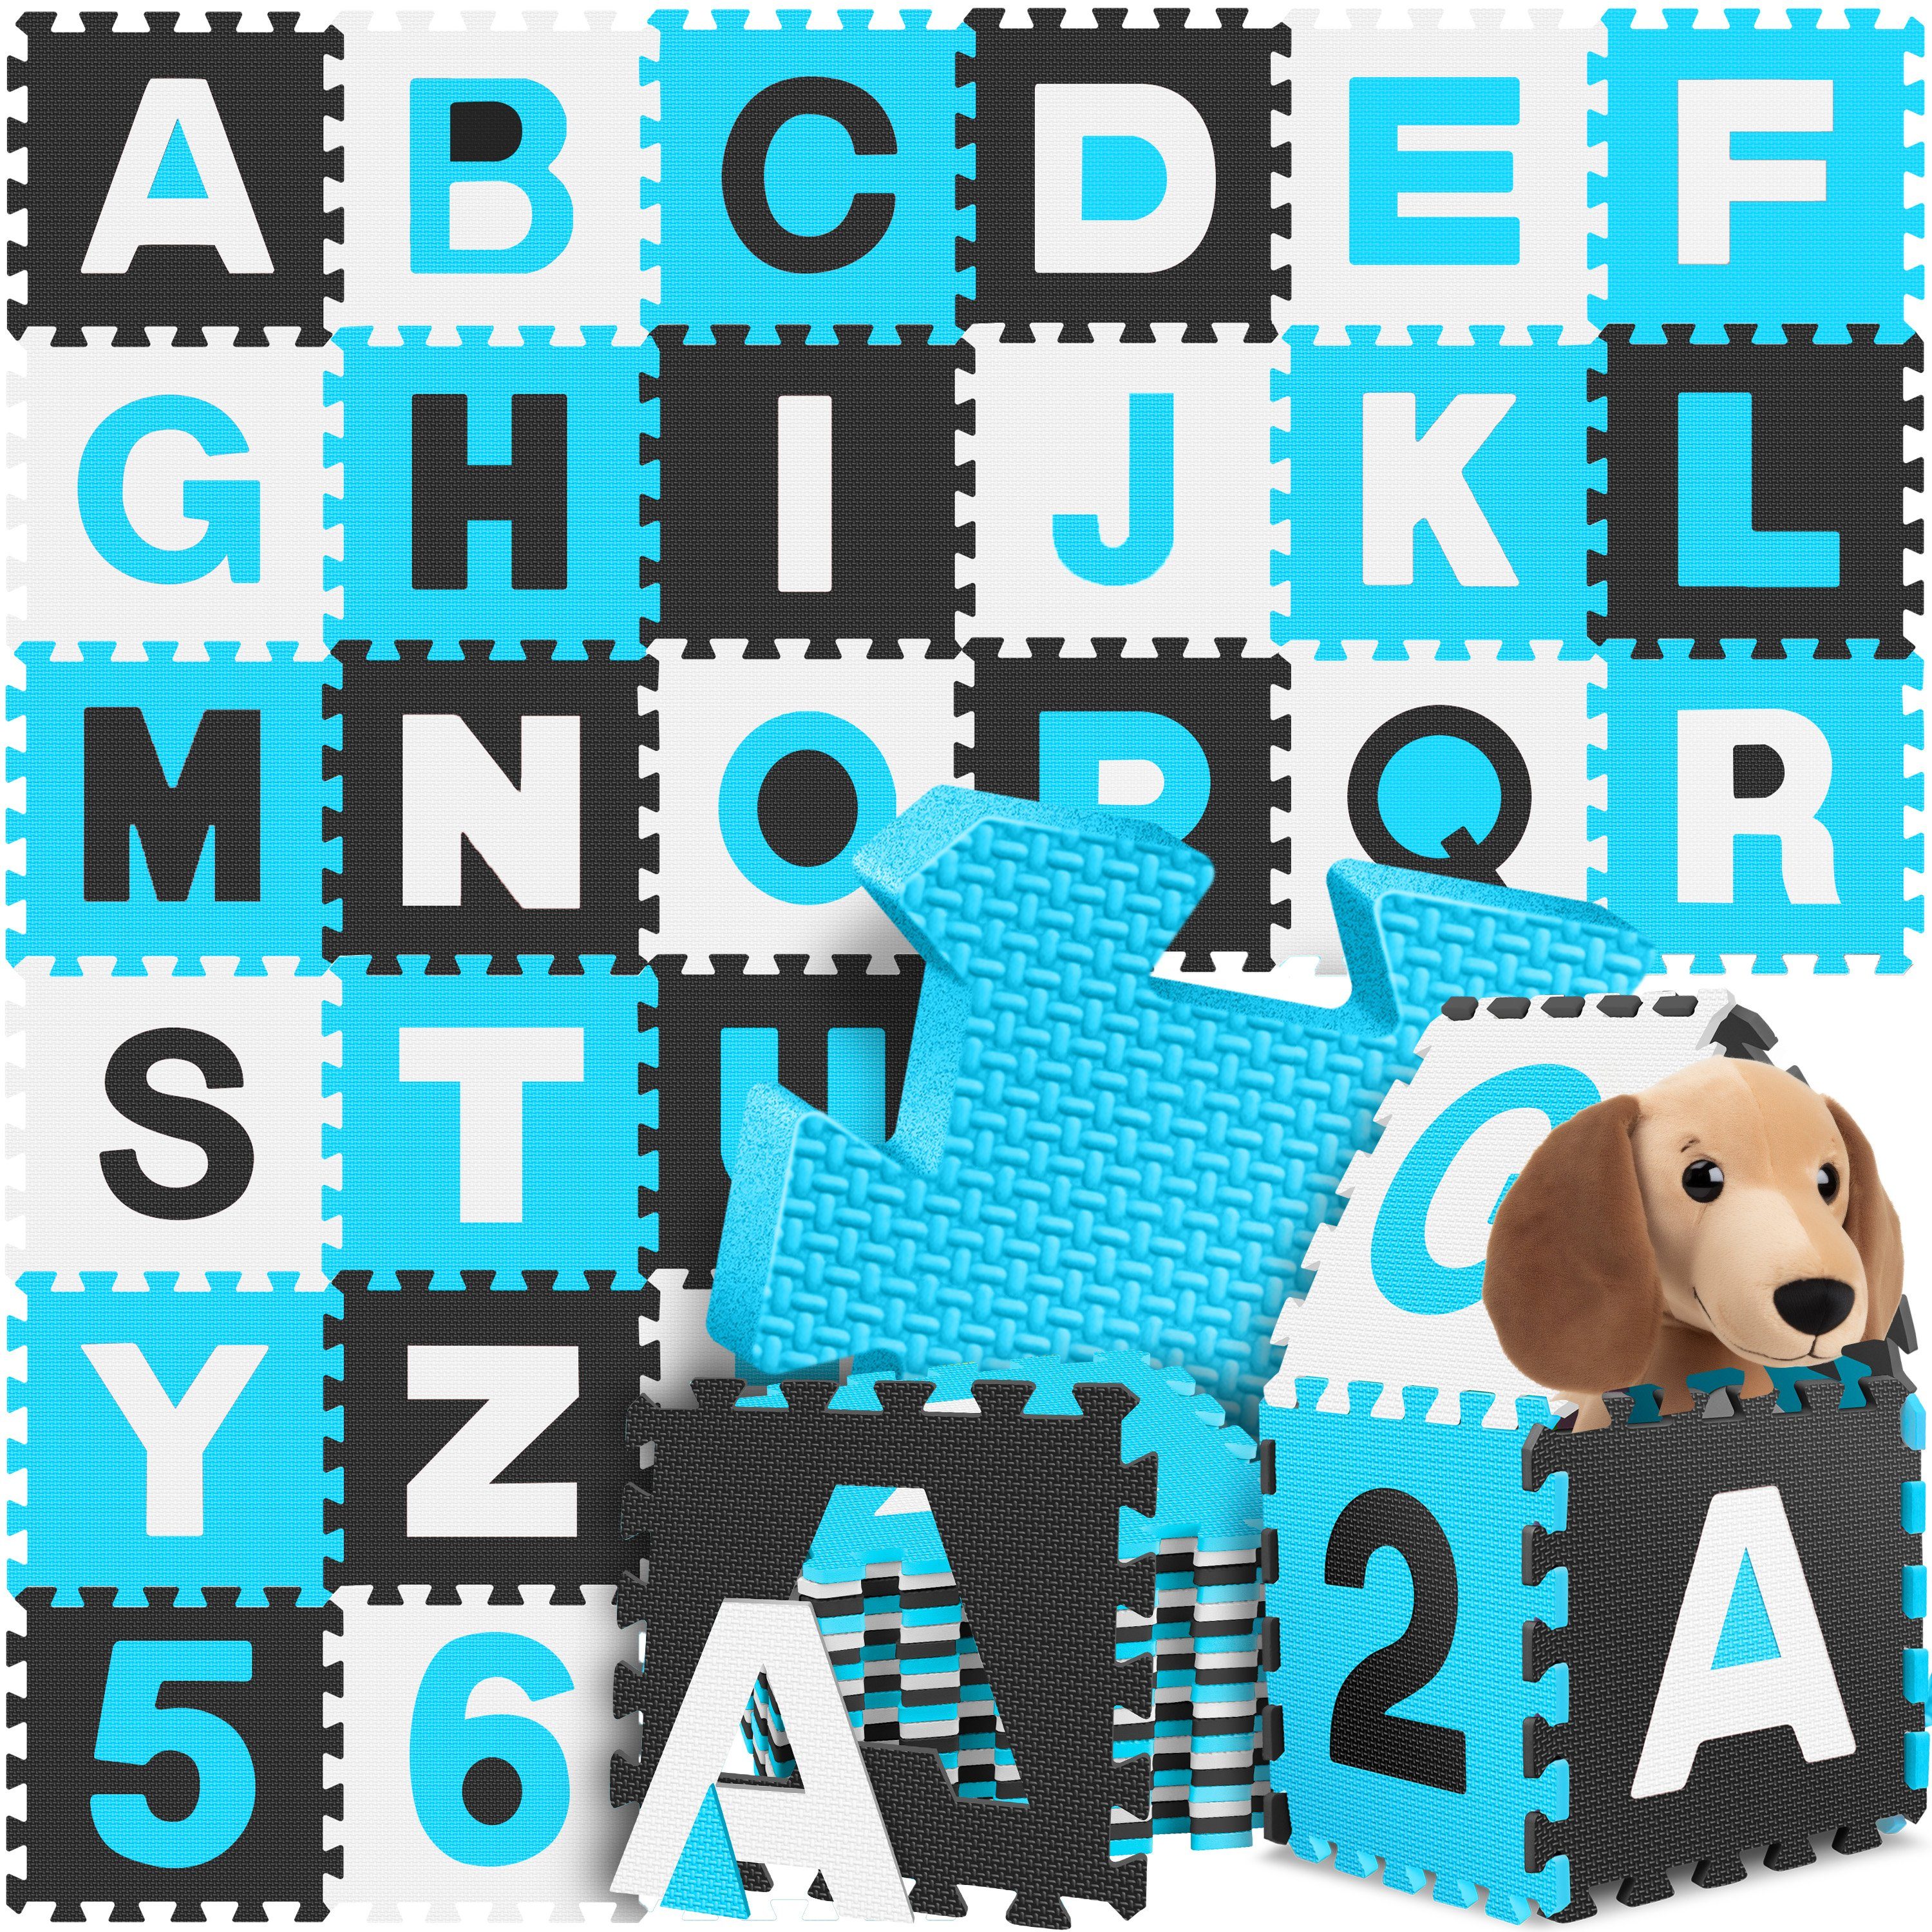 KIDIZ Steckpuzzle, 86 Puzzleteile, 86 teilige Puzzlematte Kinder Spielteppich Spielmatte blau